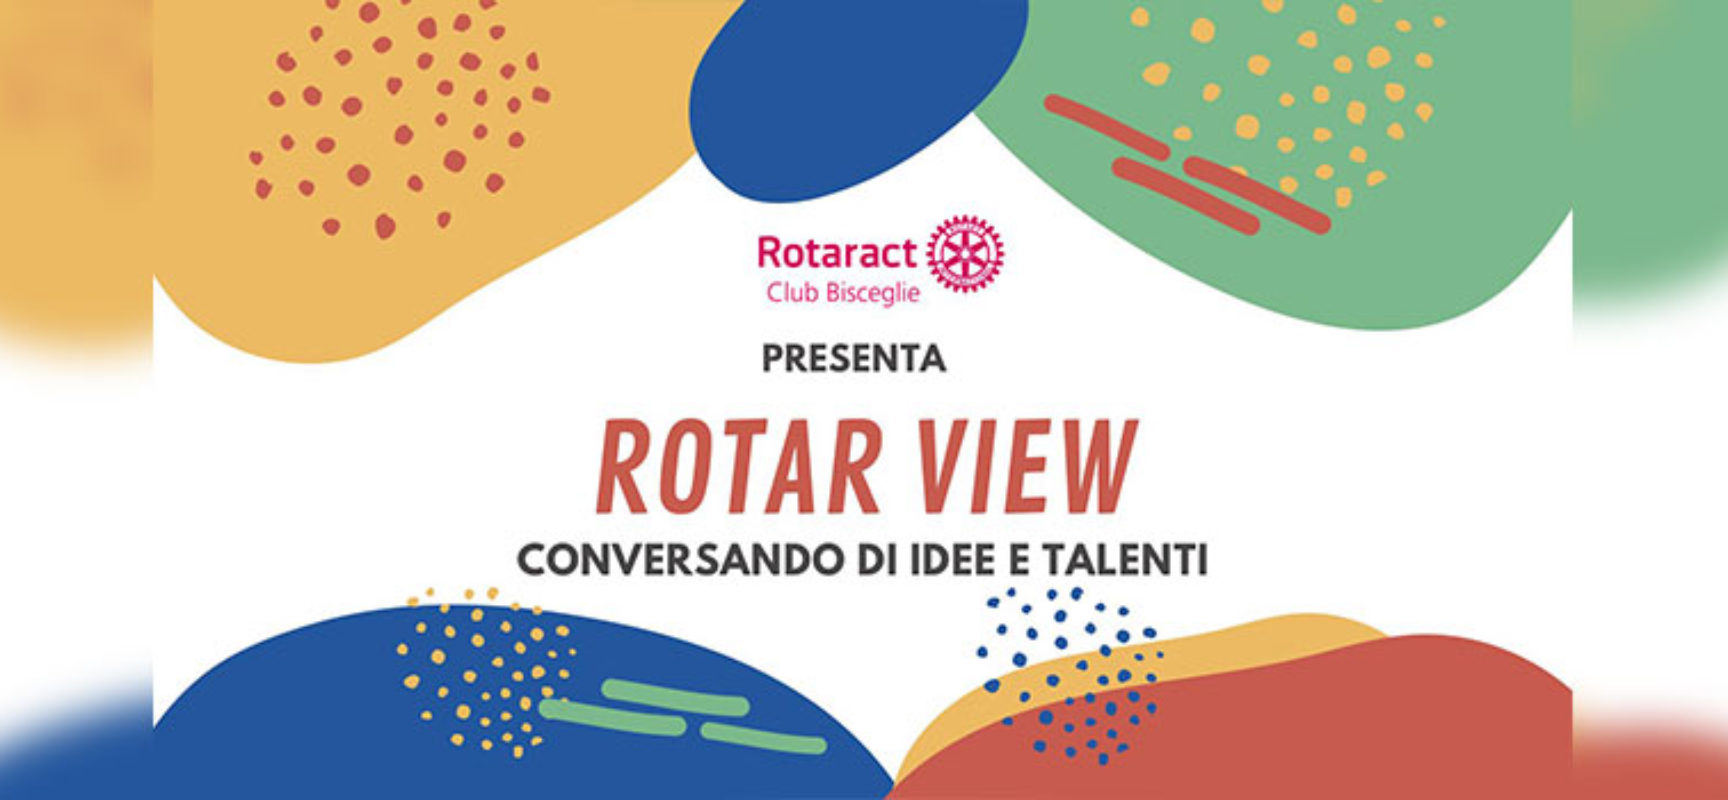 Rotaract Bisceglie, al via la rubrica “Rotar-View: conversando di idee e di talenti”